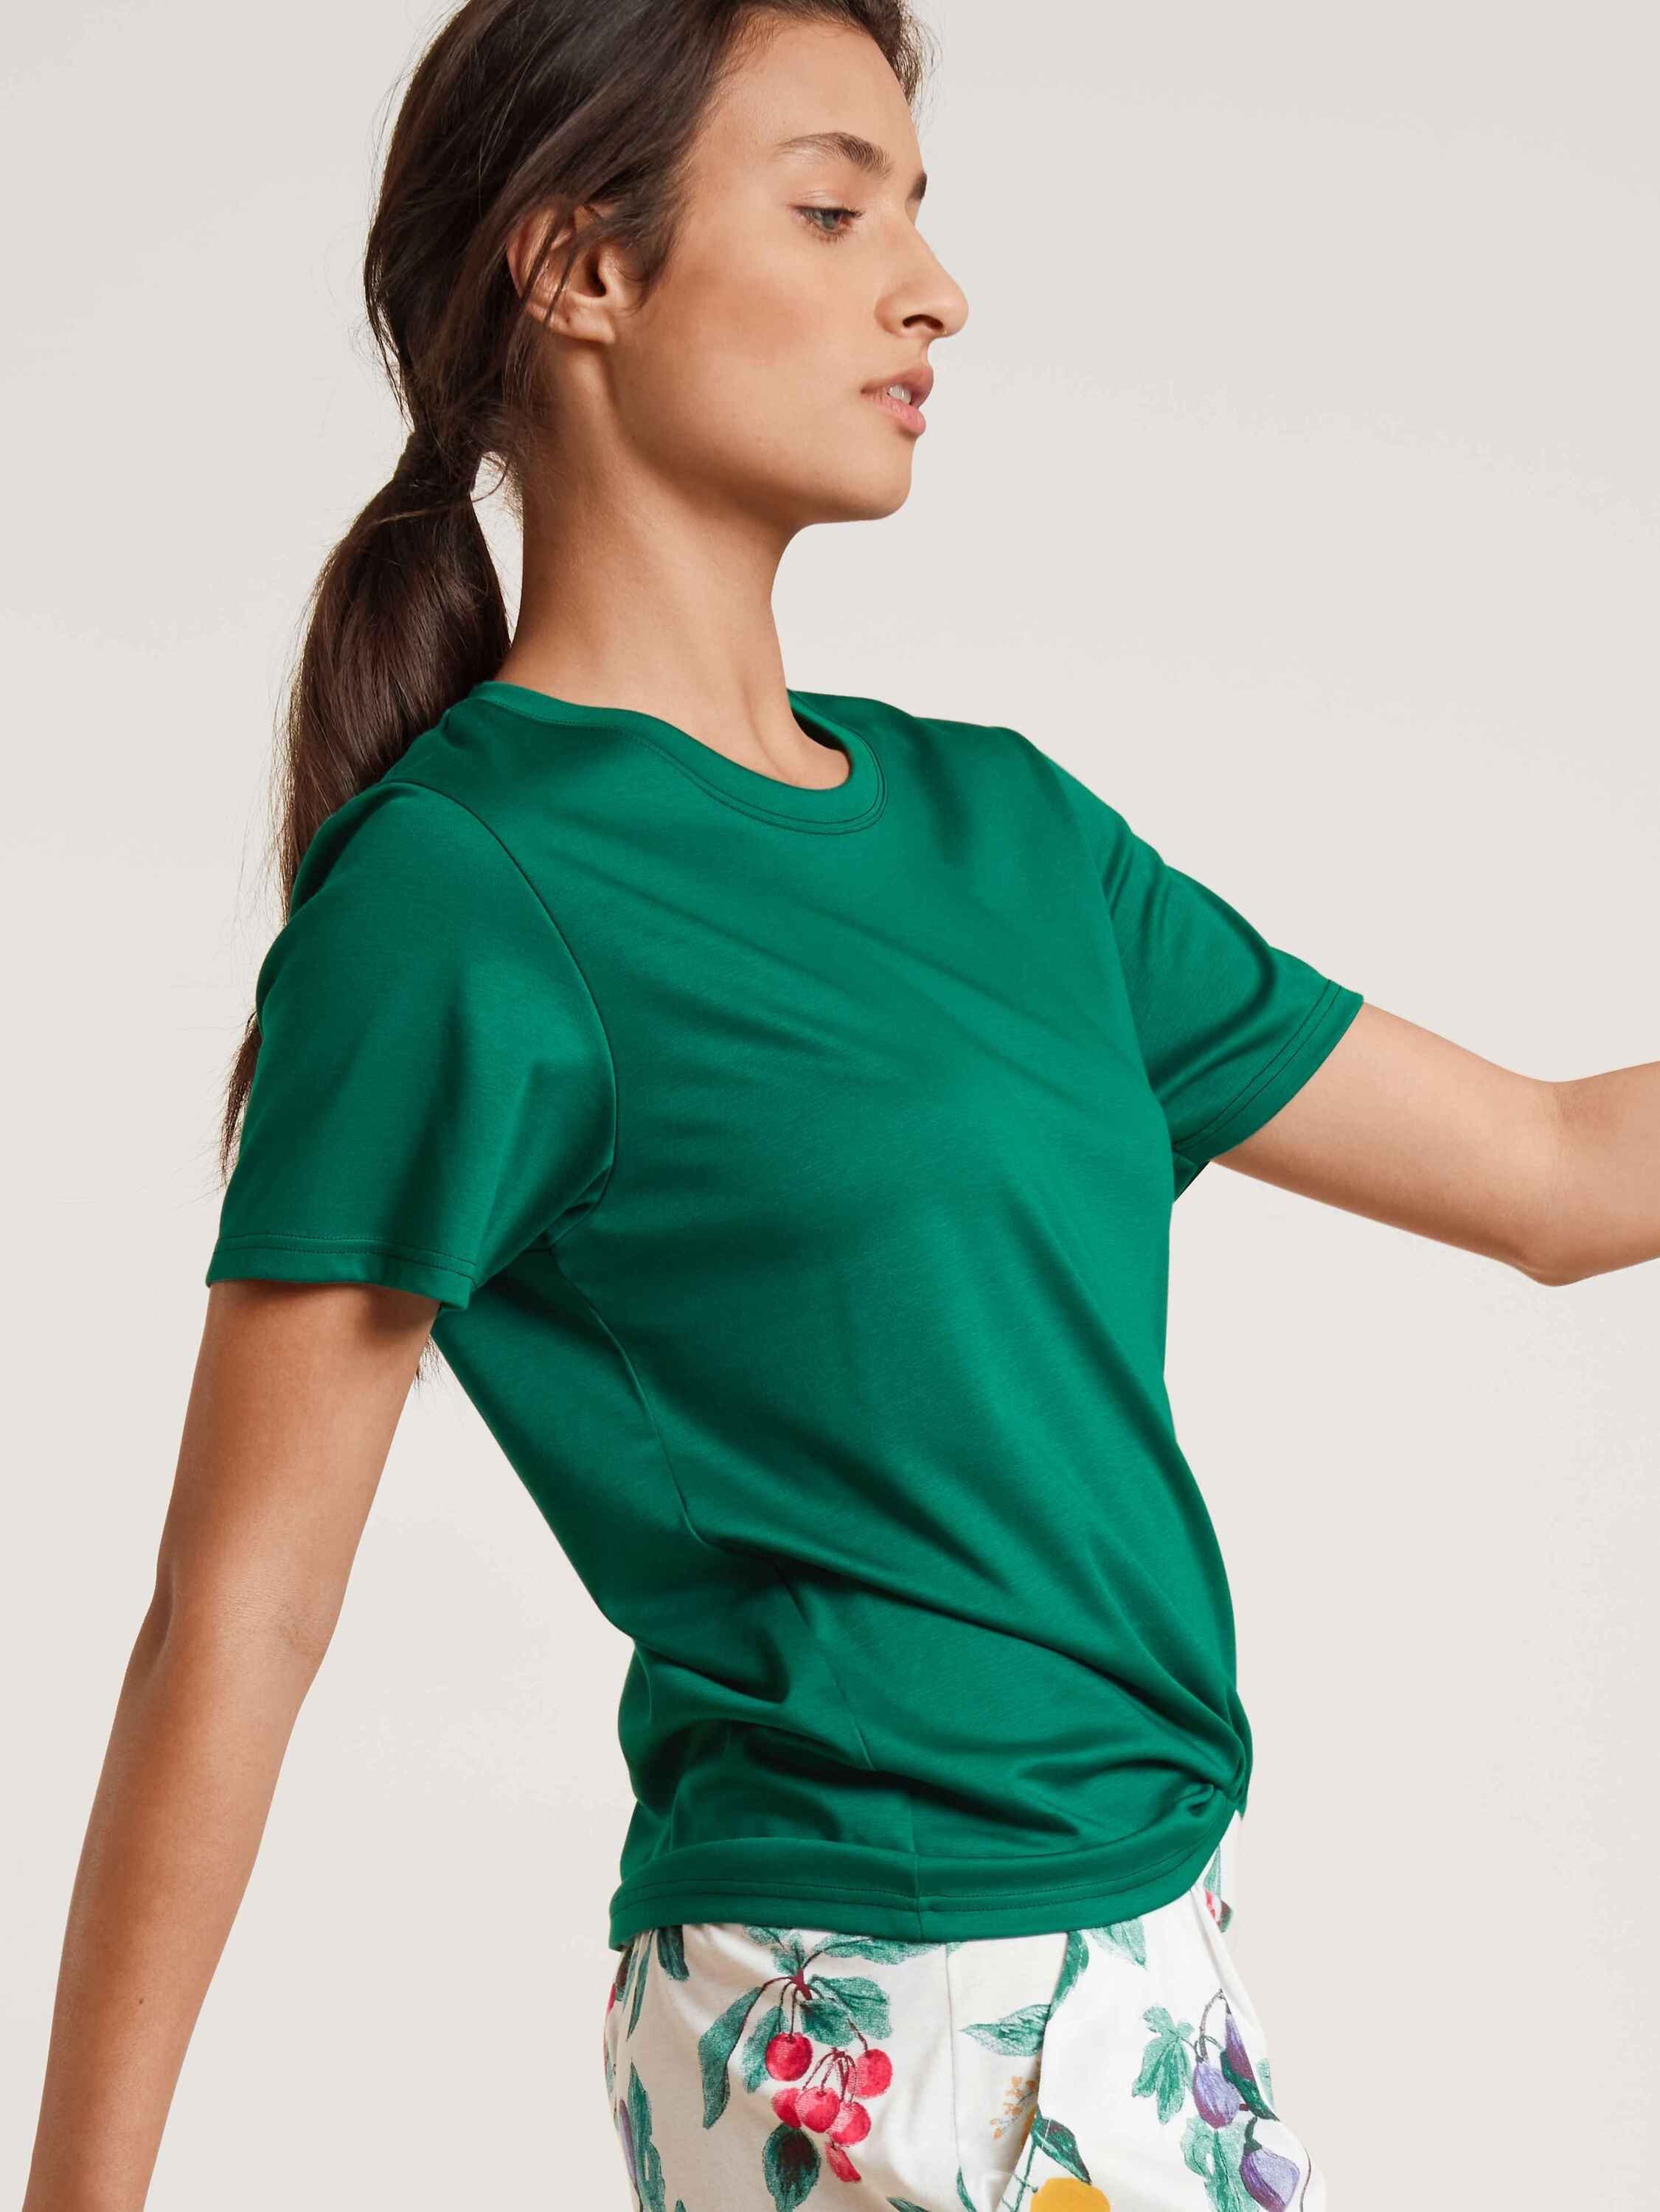 (1-tlg) CALIDA Kurzarm-Shirt Kurzarmshirt